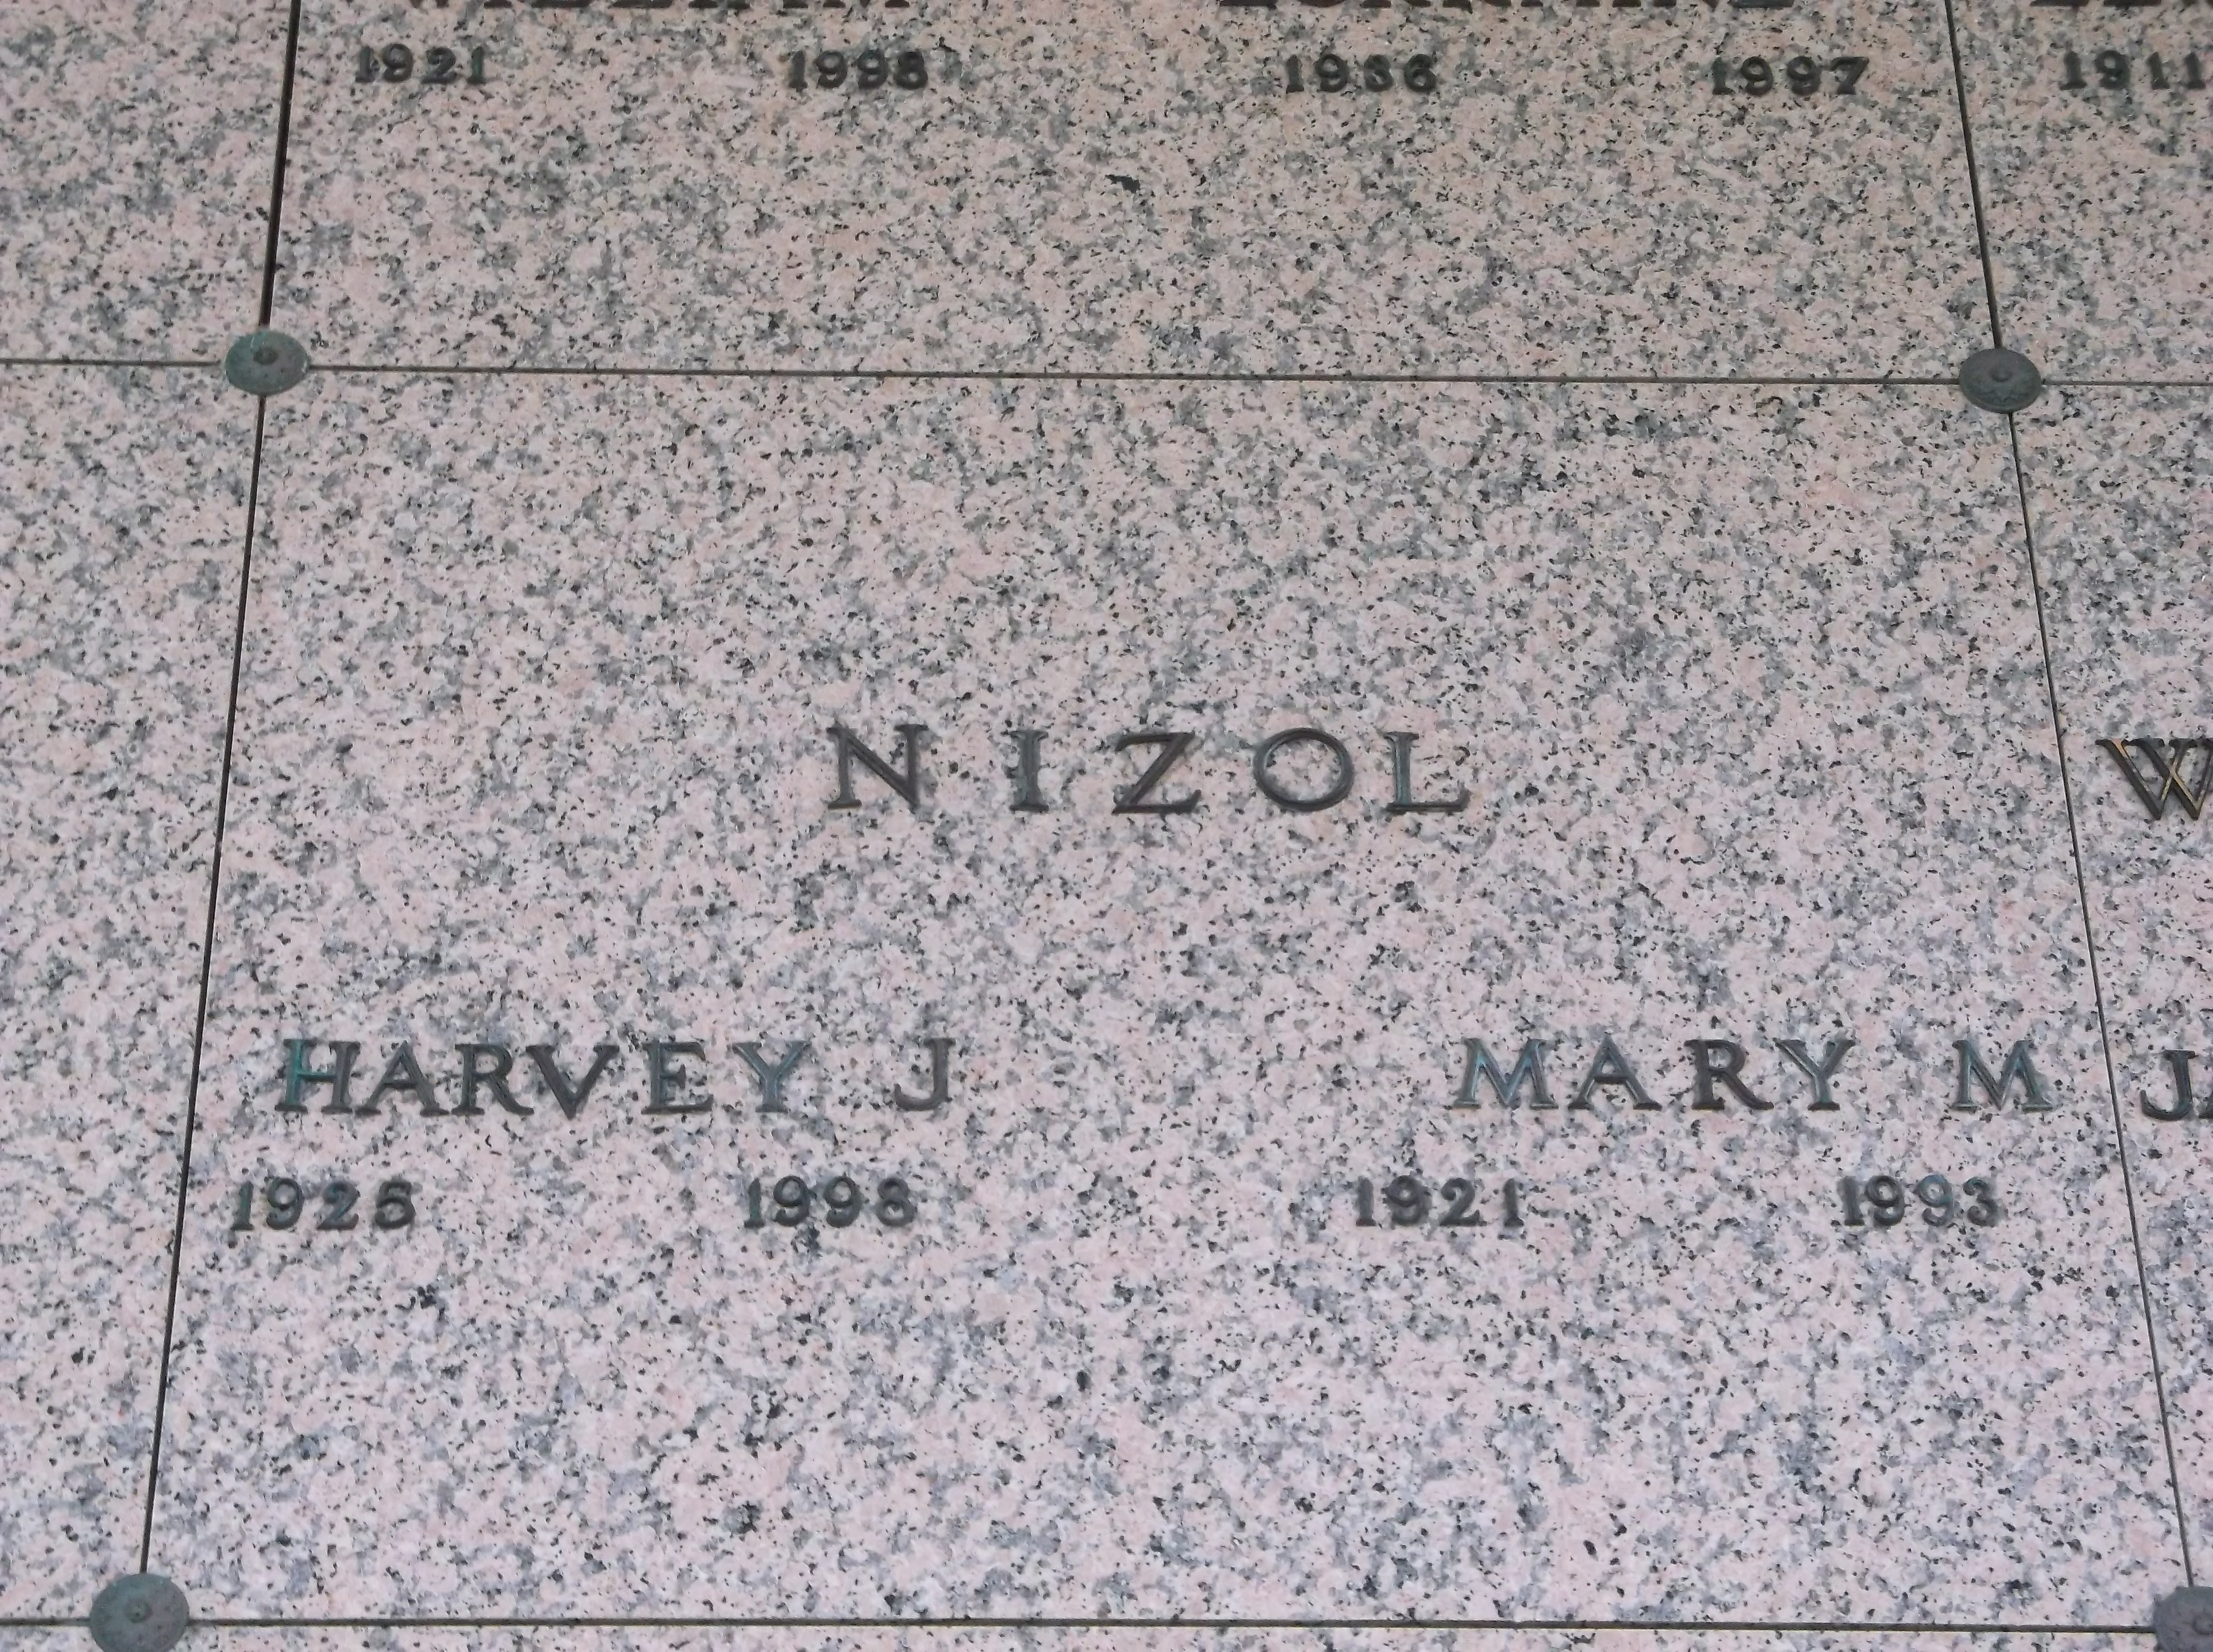 Harvey J Nizol